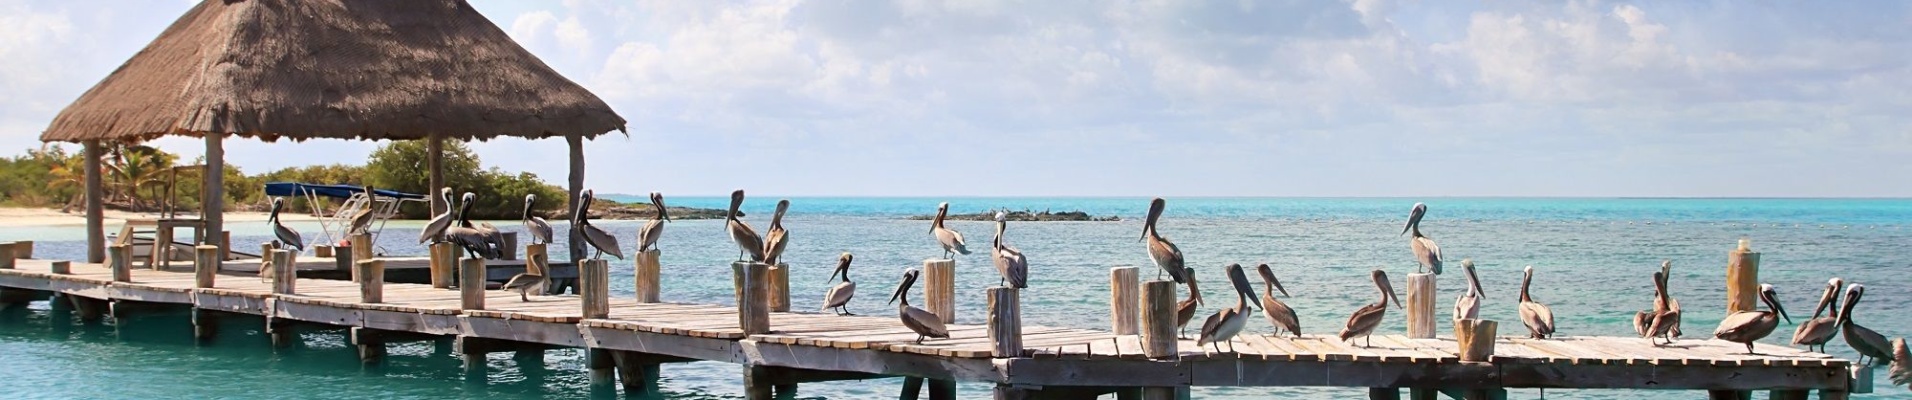 Ile de Contoy, Yucatan, Mexique